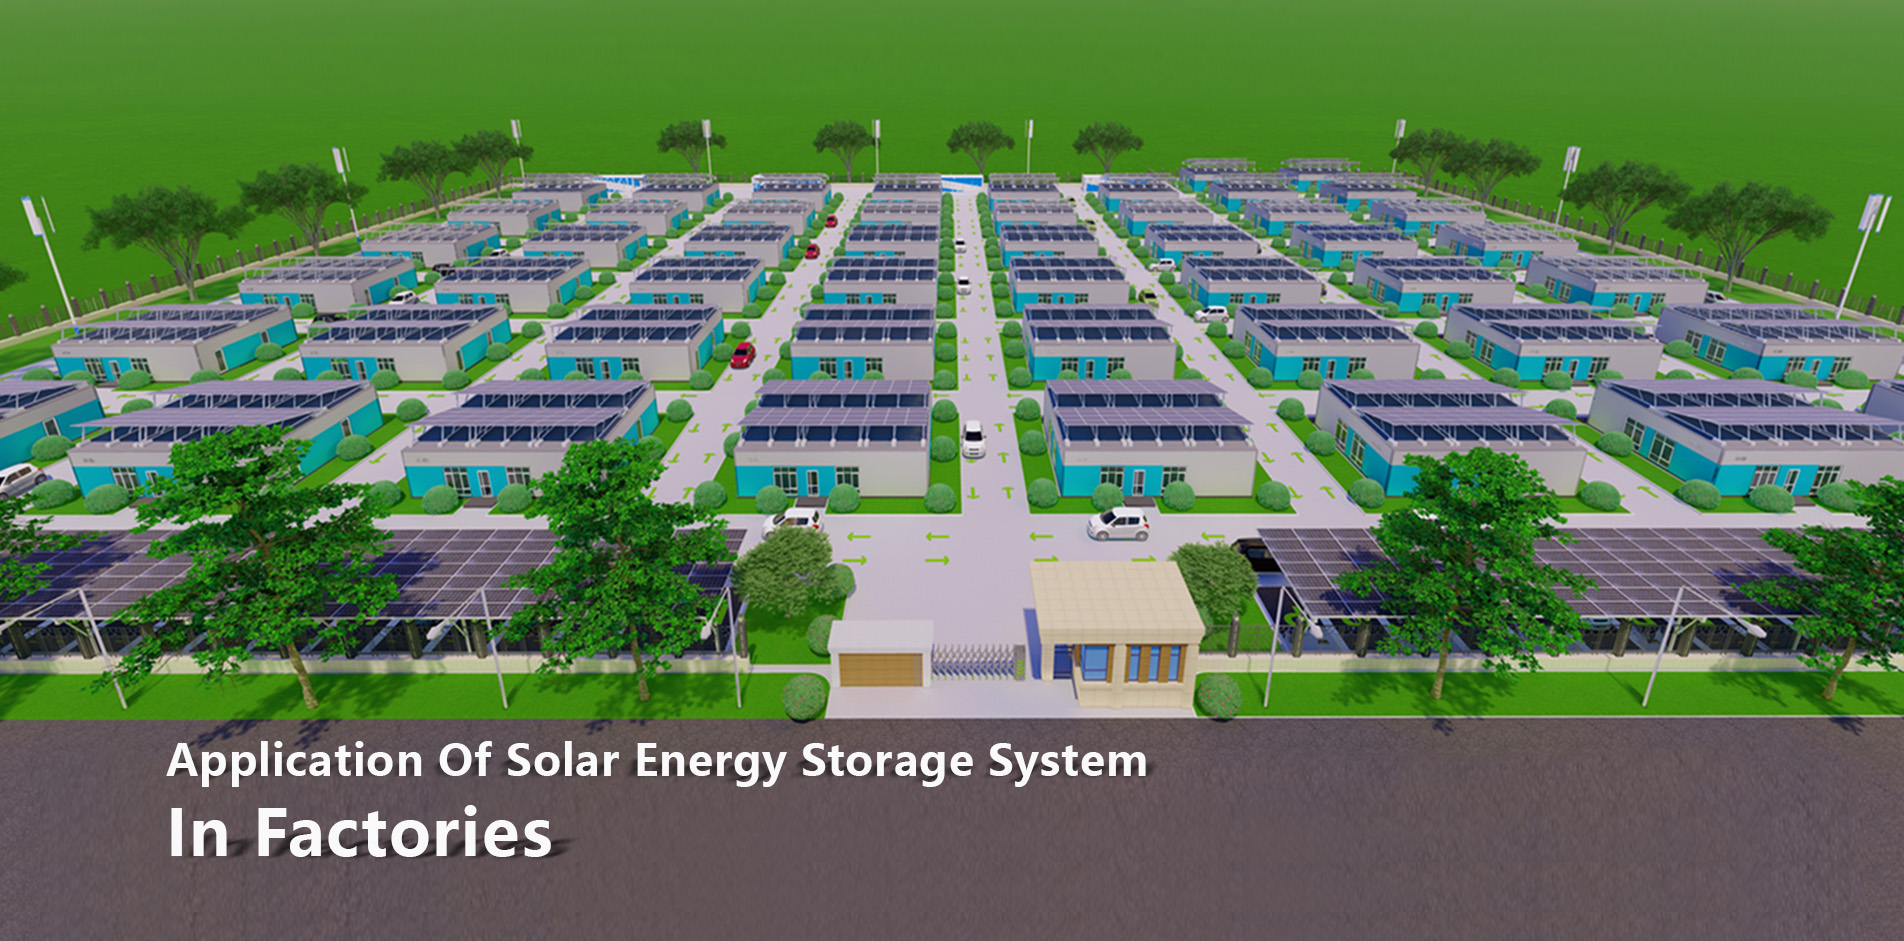 鉱山地域における太陽エネルギー貯蔵システム